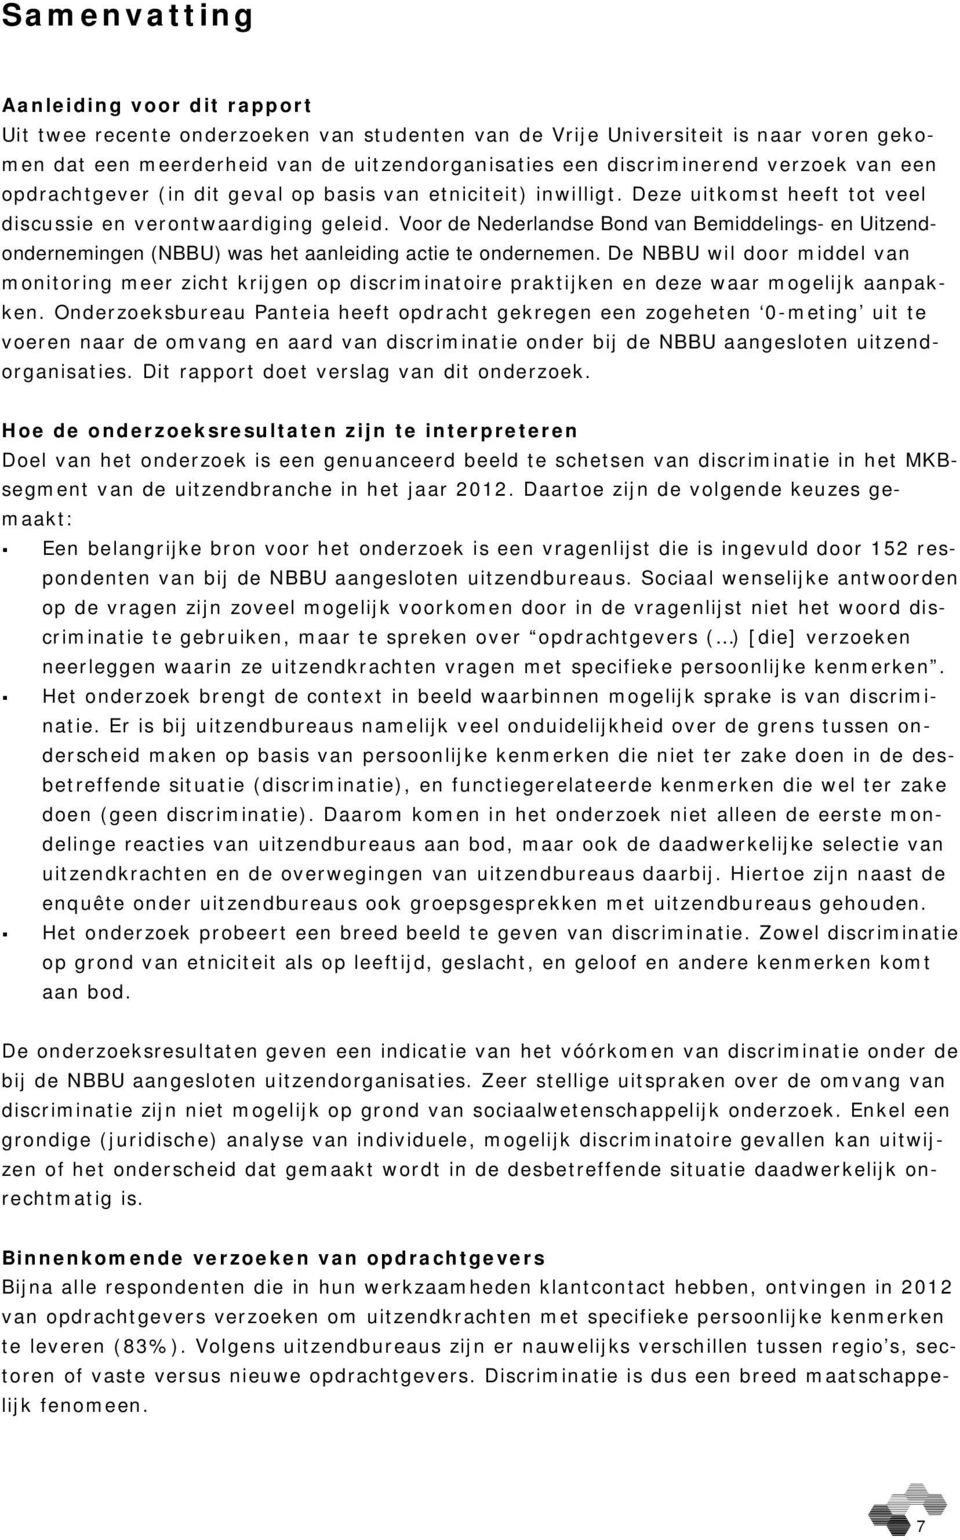 Voor de Nederlandse Bond van Bemiddelings- en Uitzendondernemingen (NBBU) was het aanleiding actie te ondernemen.